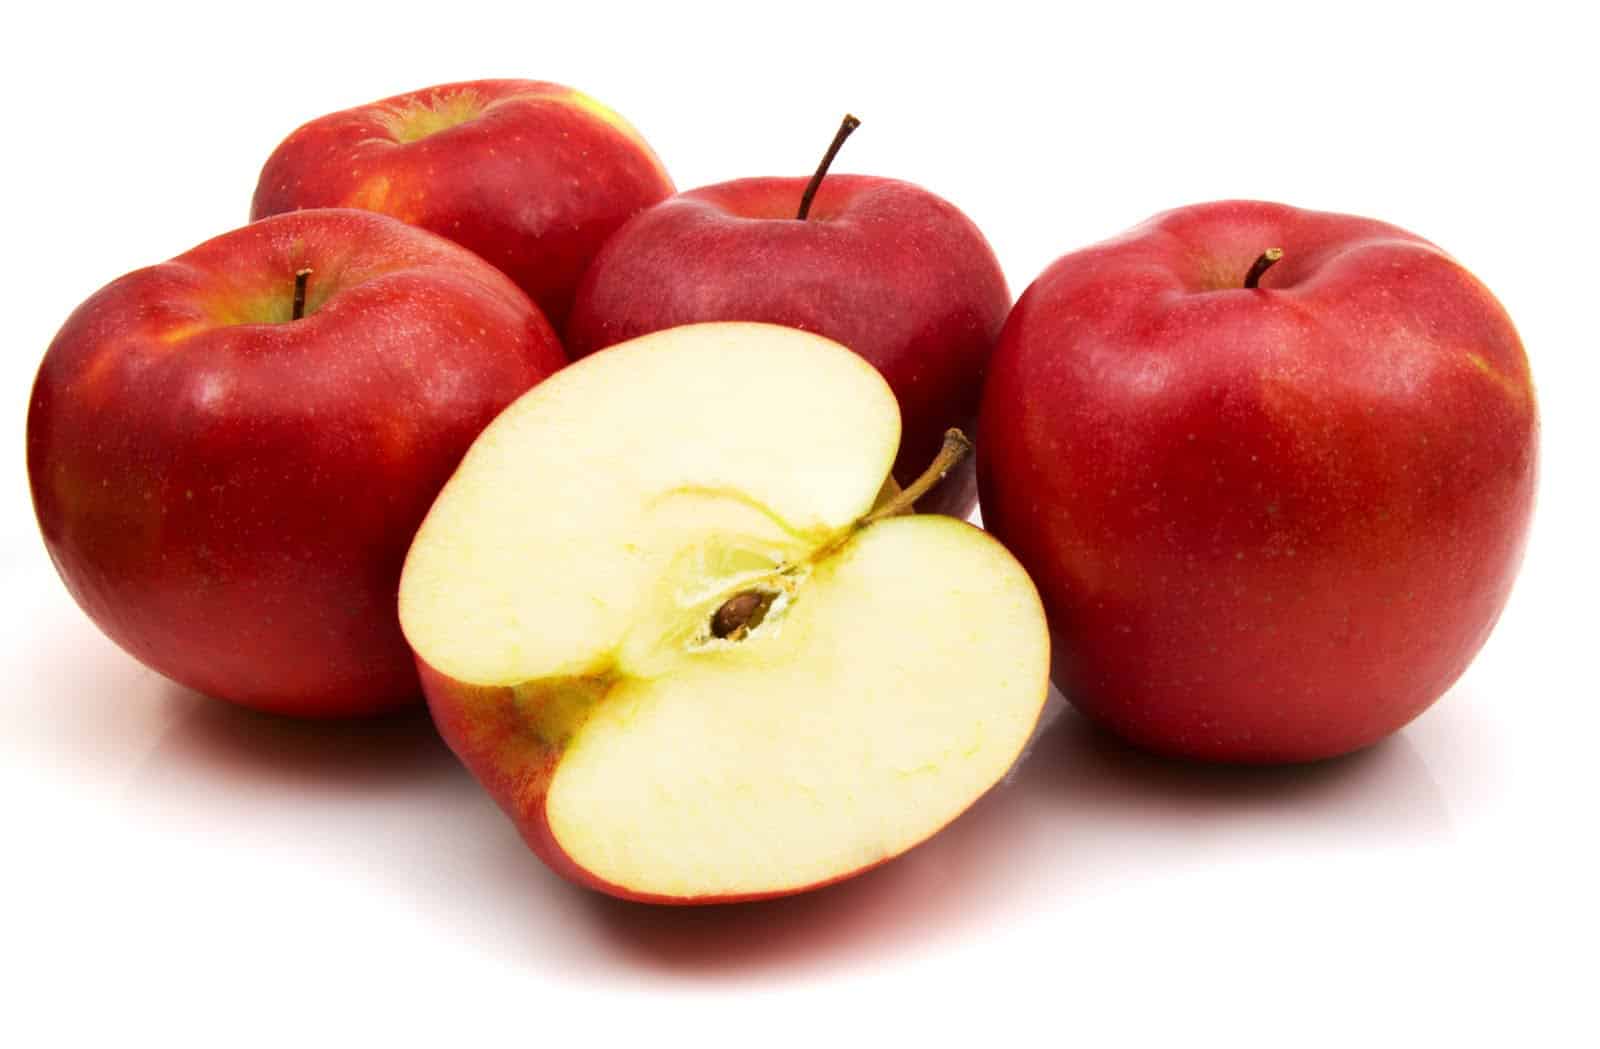  فوائد التفاح الأحمر